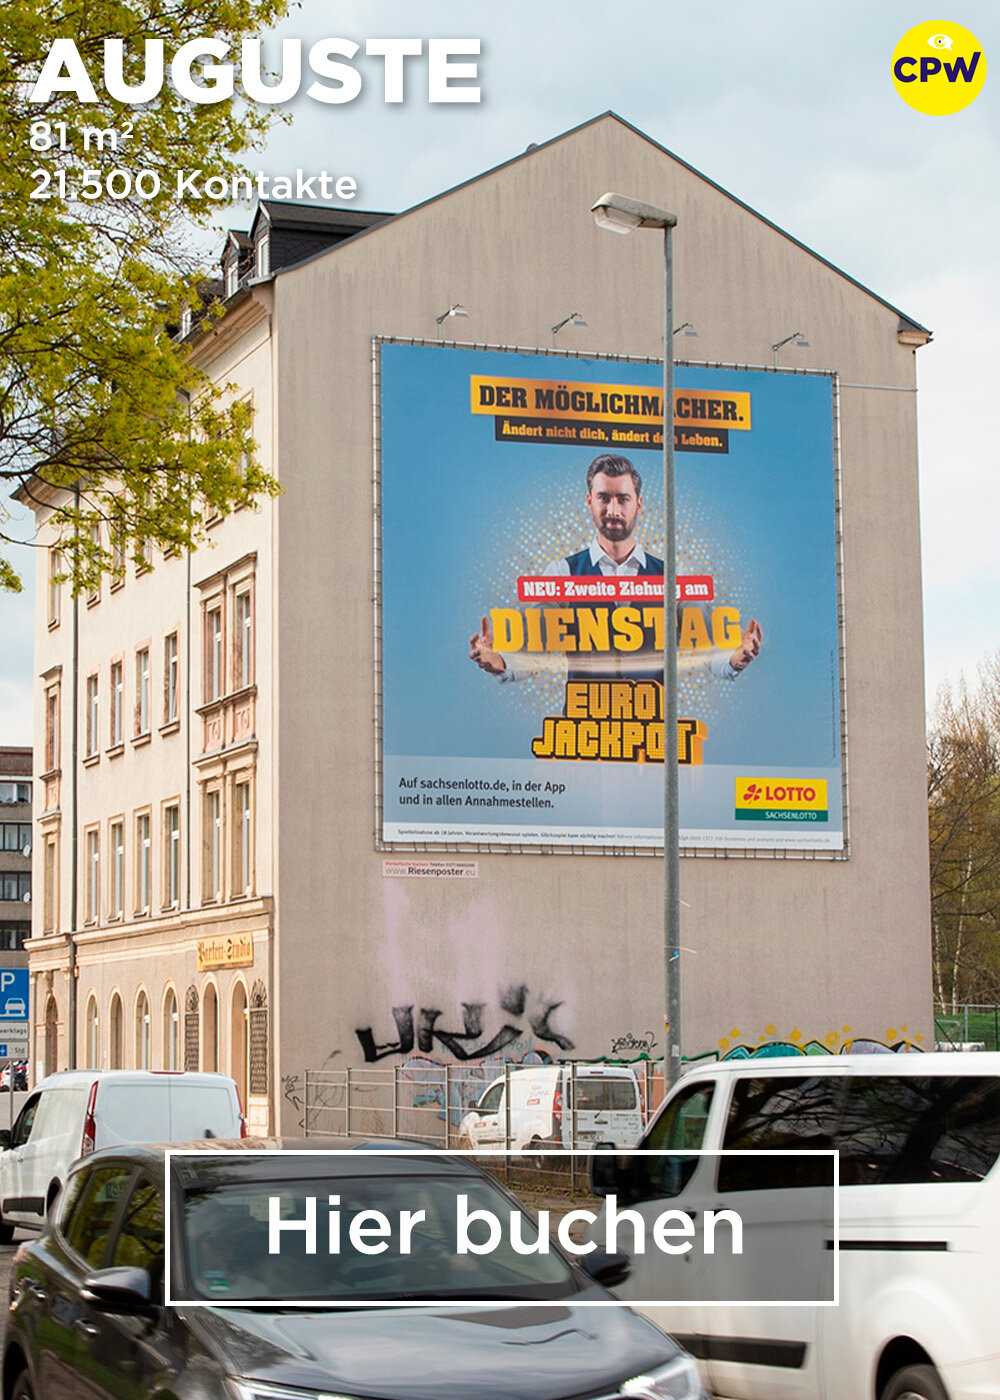 CPW Plakatwerbung Chemnitz - Werbestandort AUGUSTE